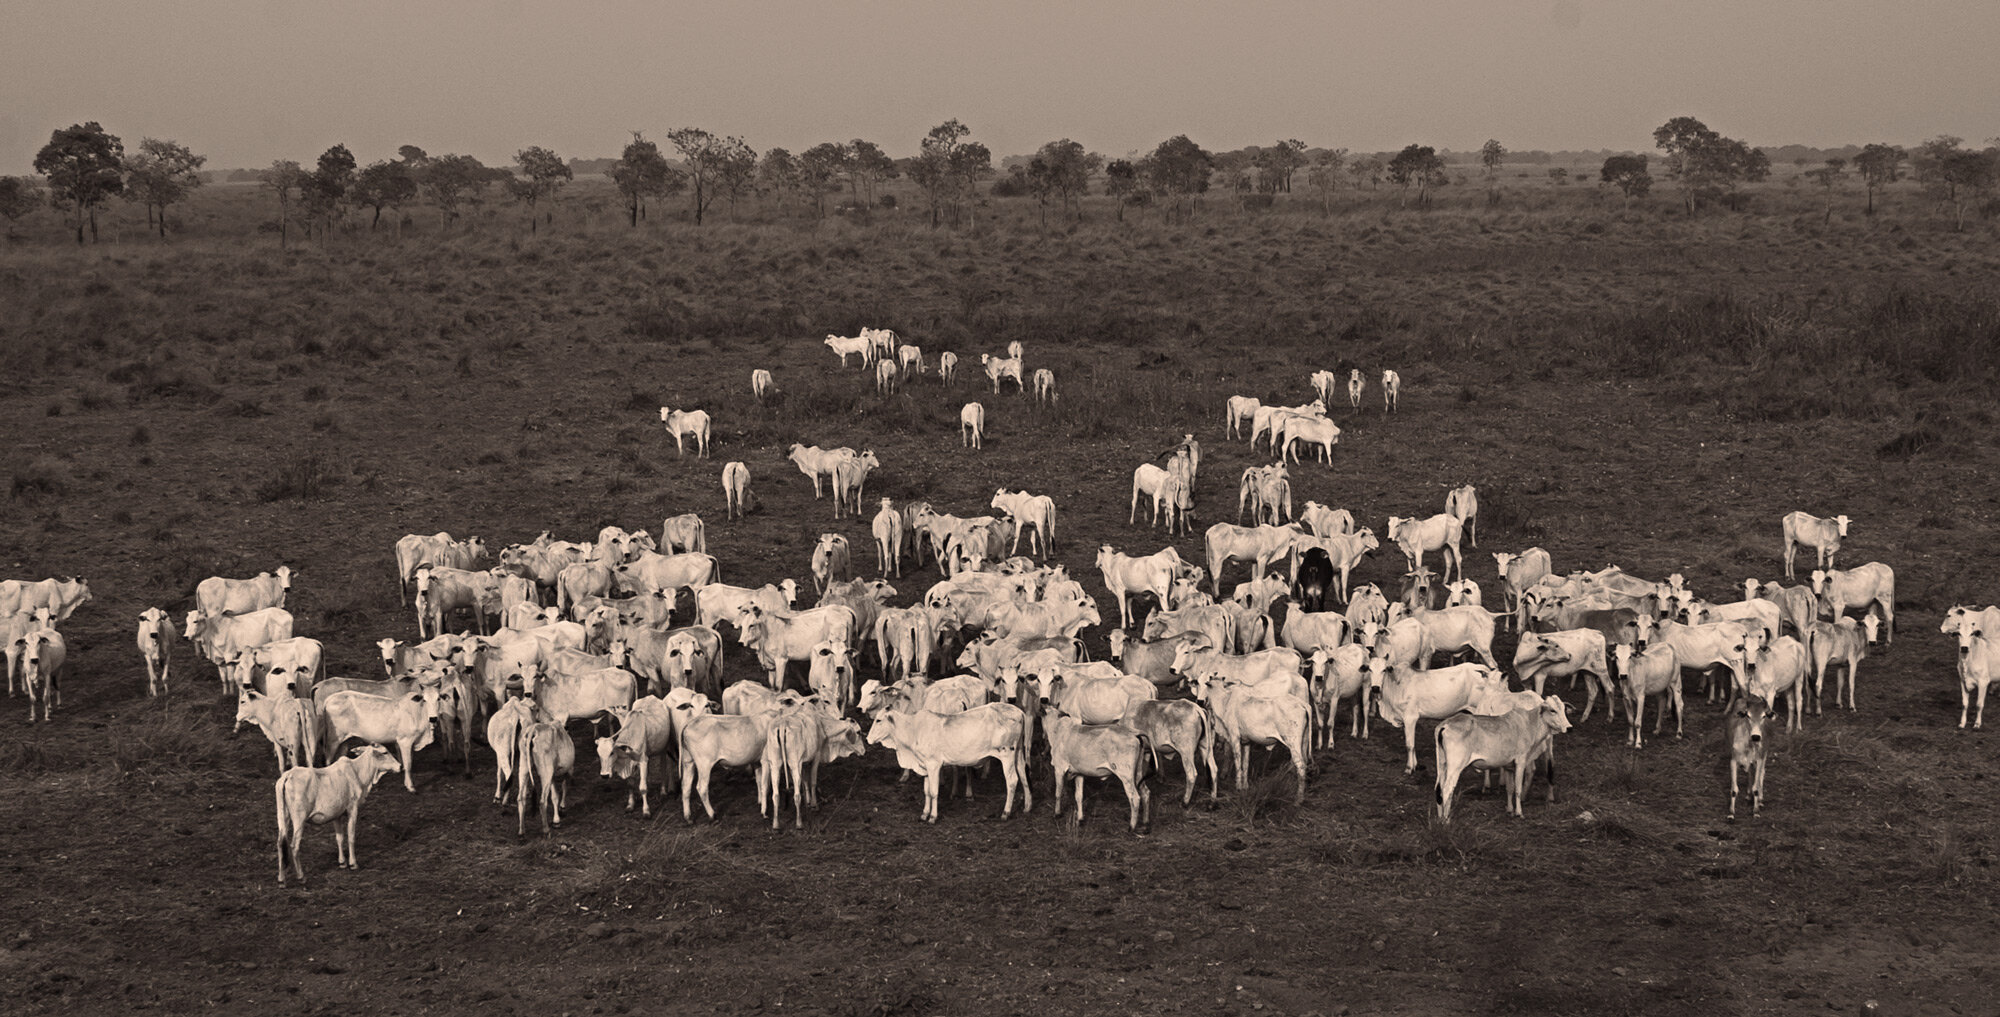 brasil_pantanal_pony_ride_herd_cattle_02.jpg